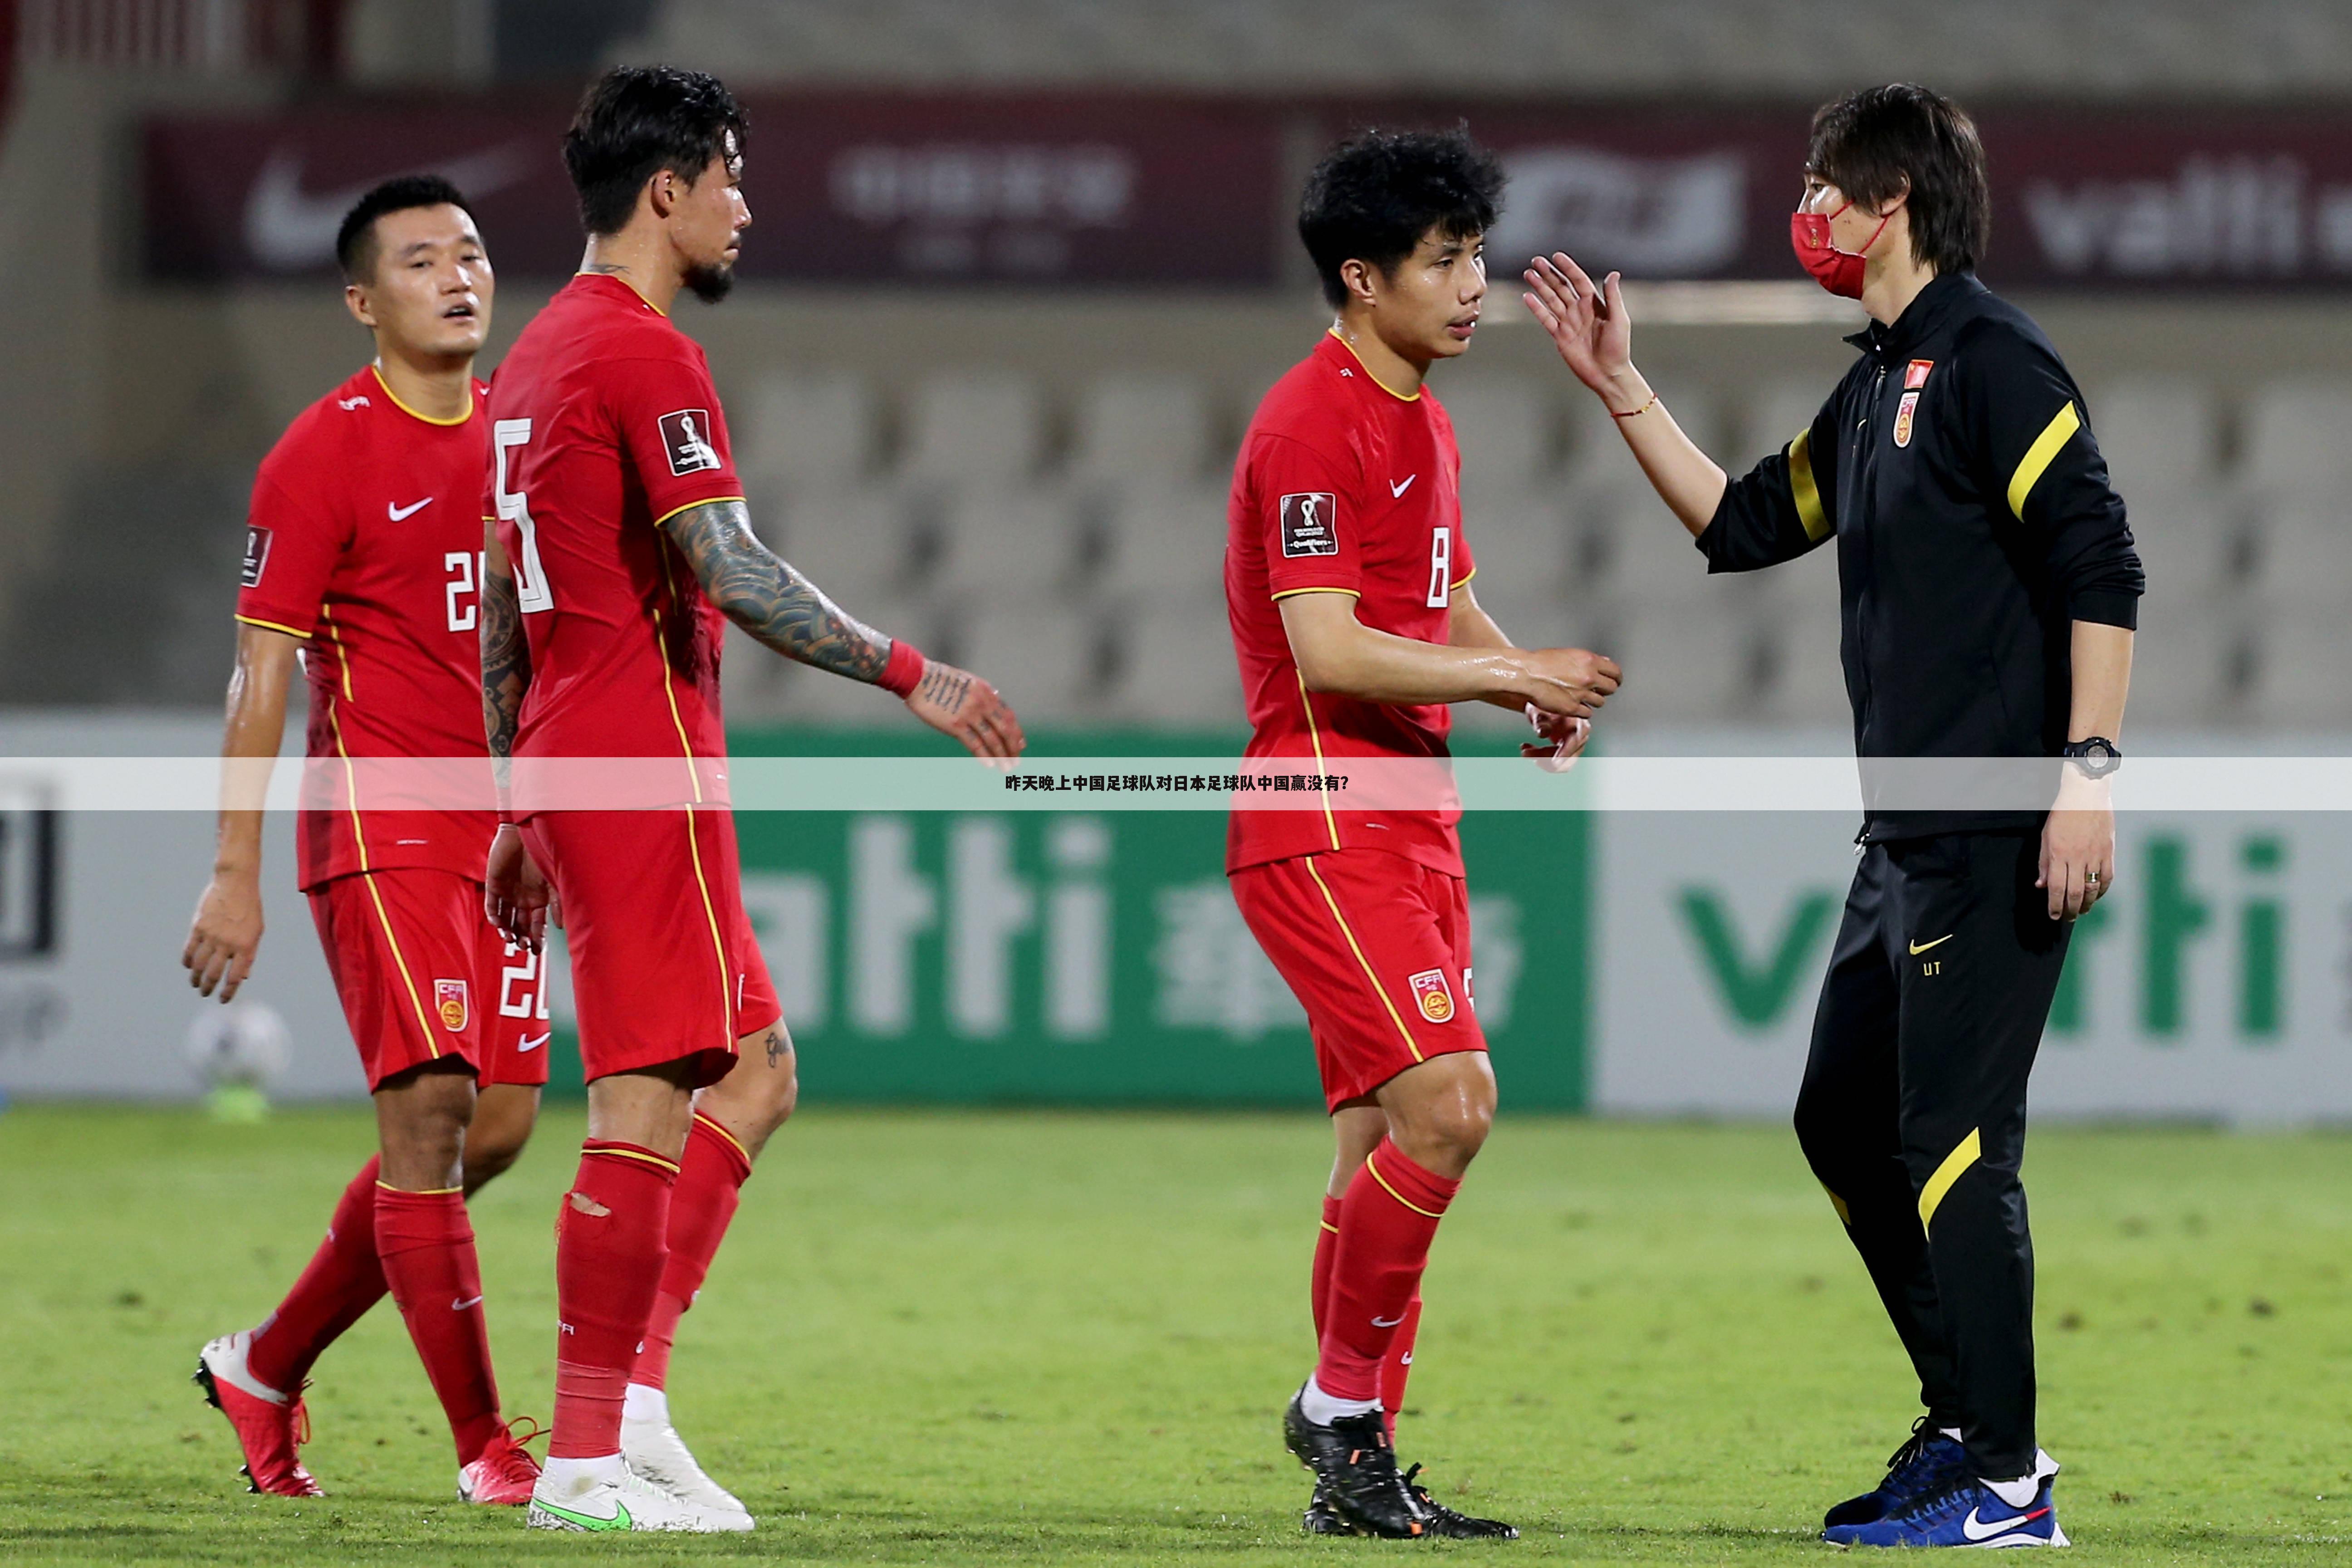 『中国对日本足球』中国对日本足球时间